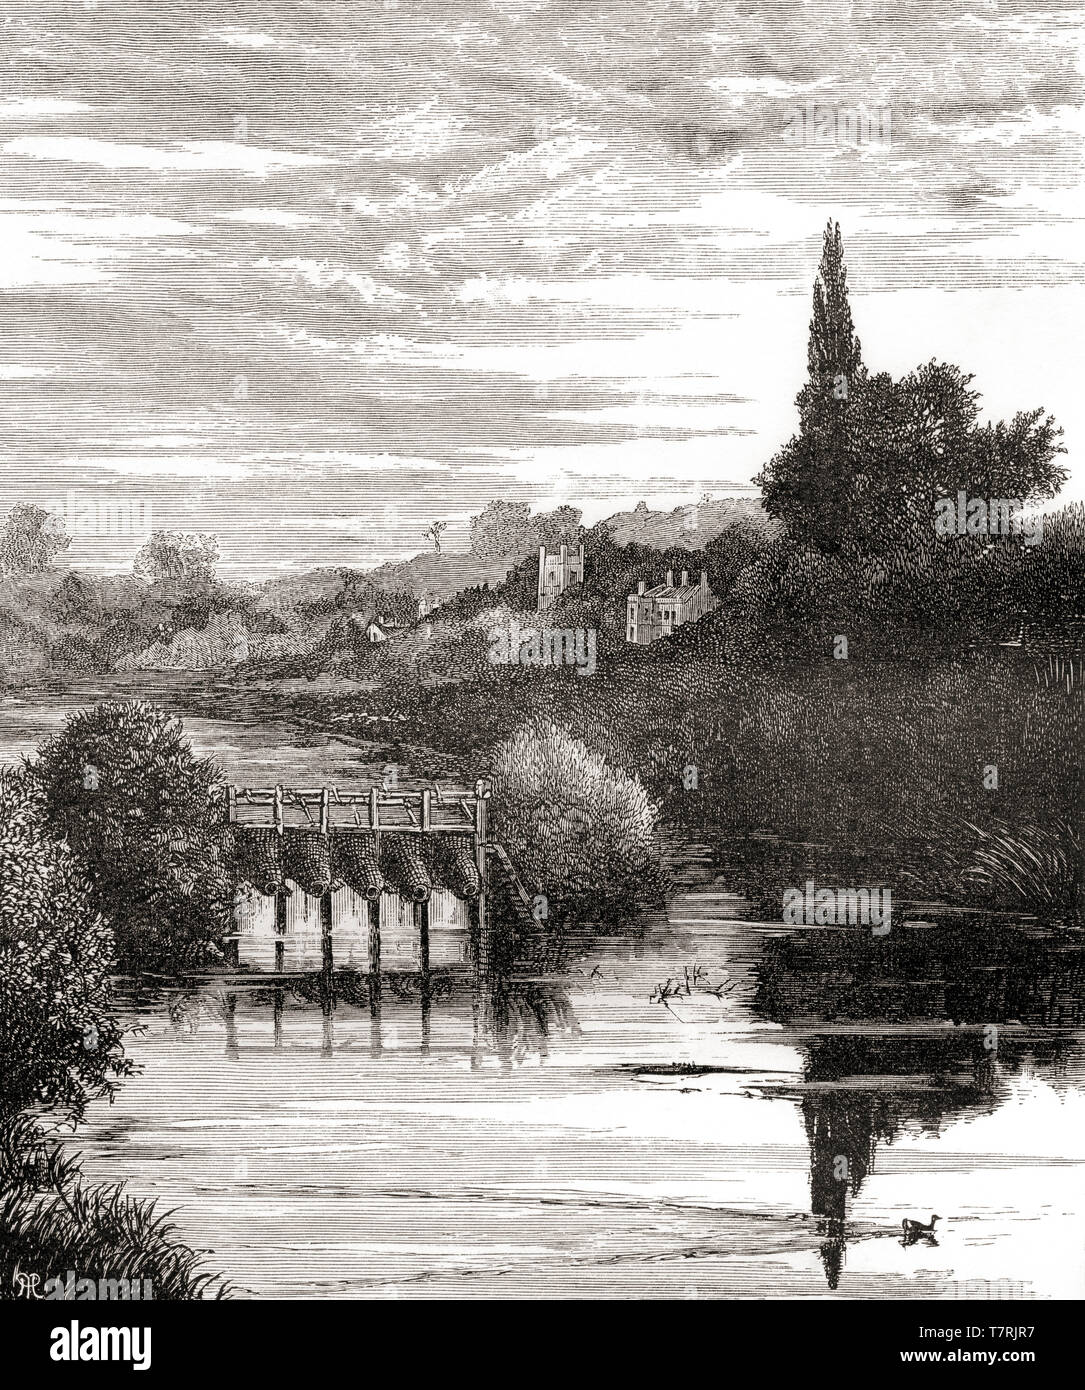 La Tamise de Caversham, la lecture, l'Angleterre, vu ici au 19e siècle. Photos de l'anglais, publié en 1890. Banque D'Images